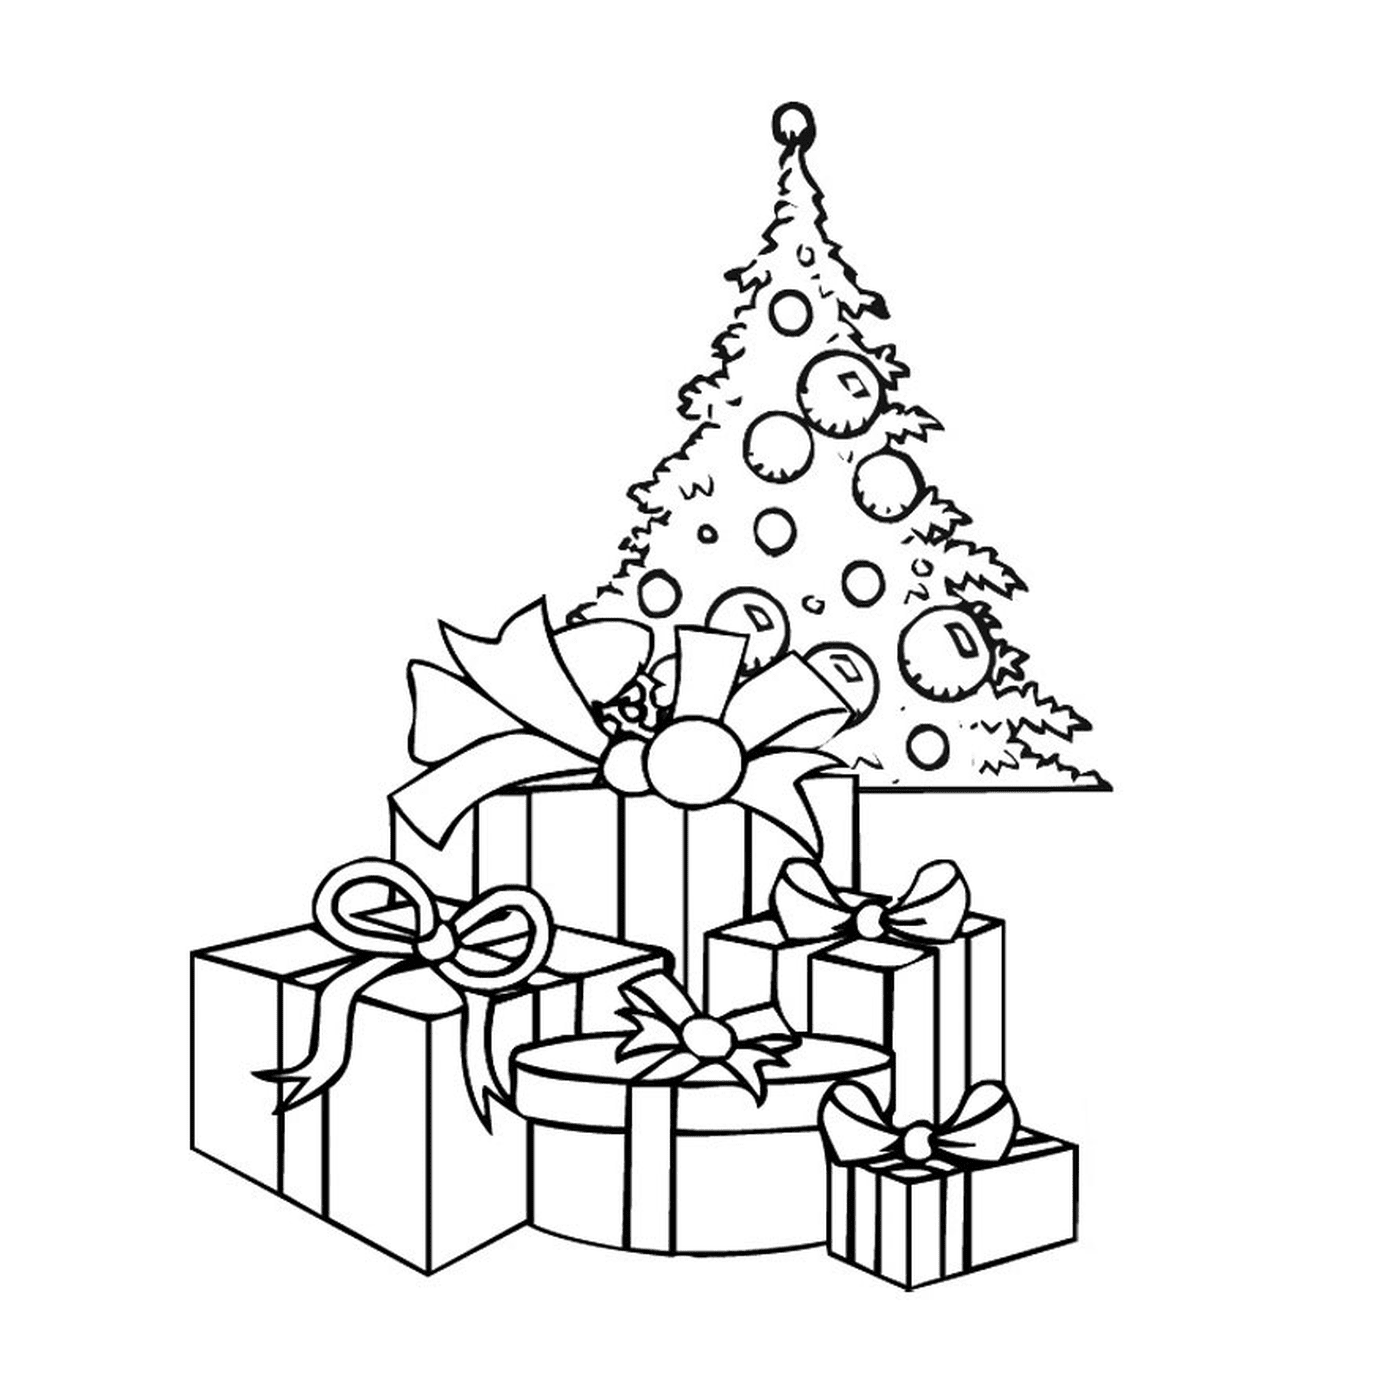  Рождественская елка с подарками под ней 